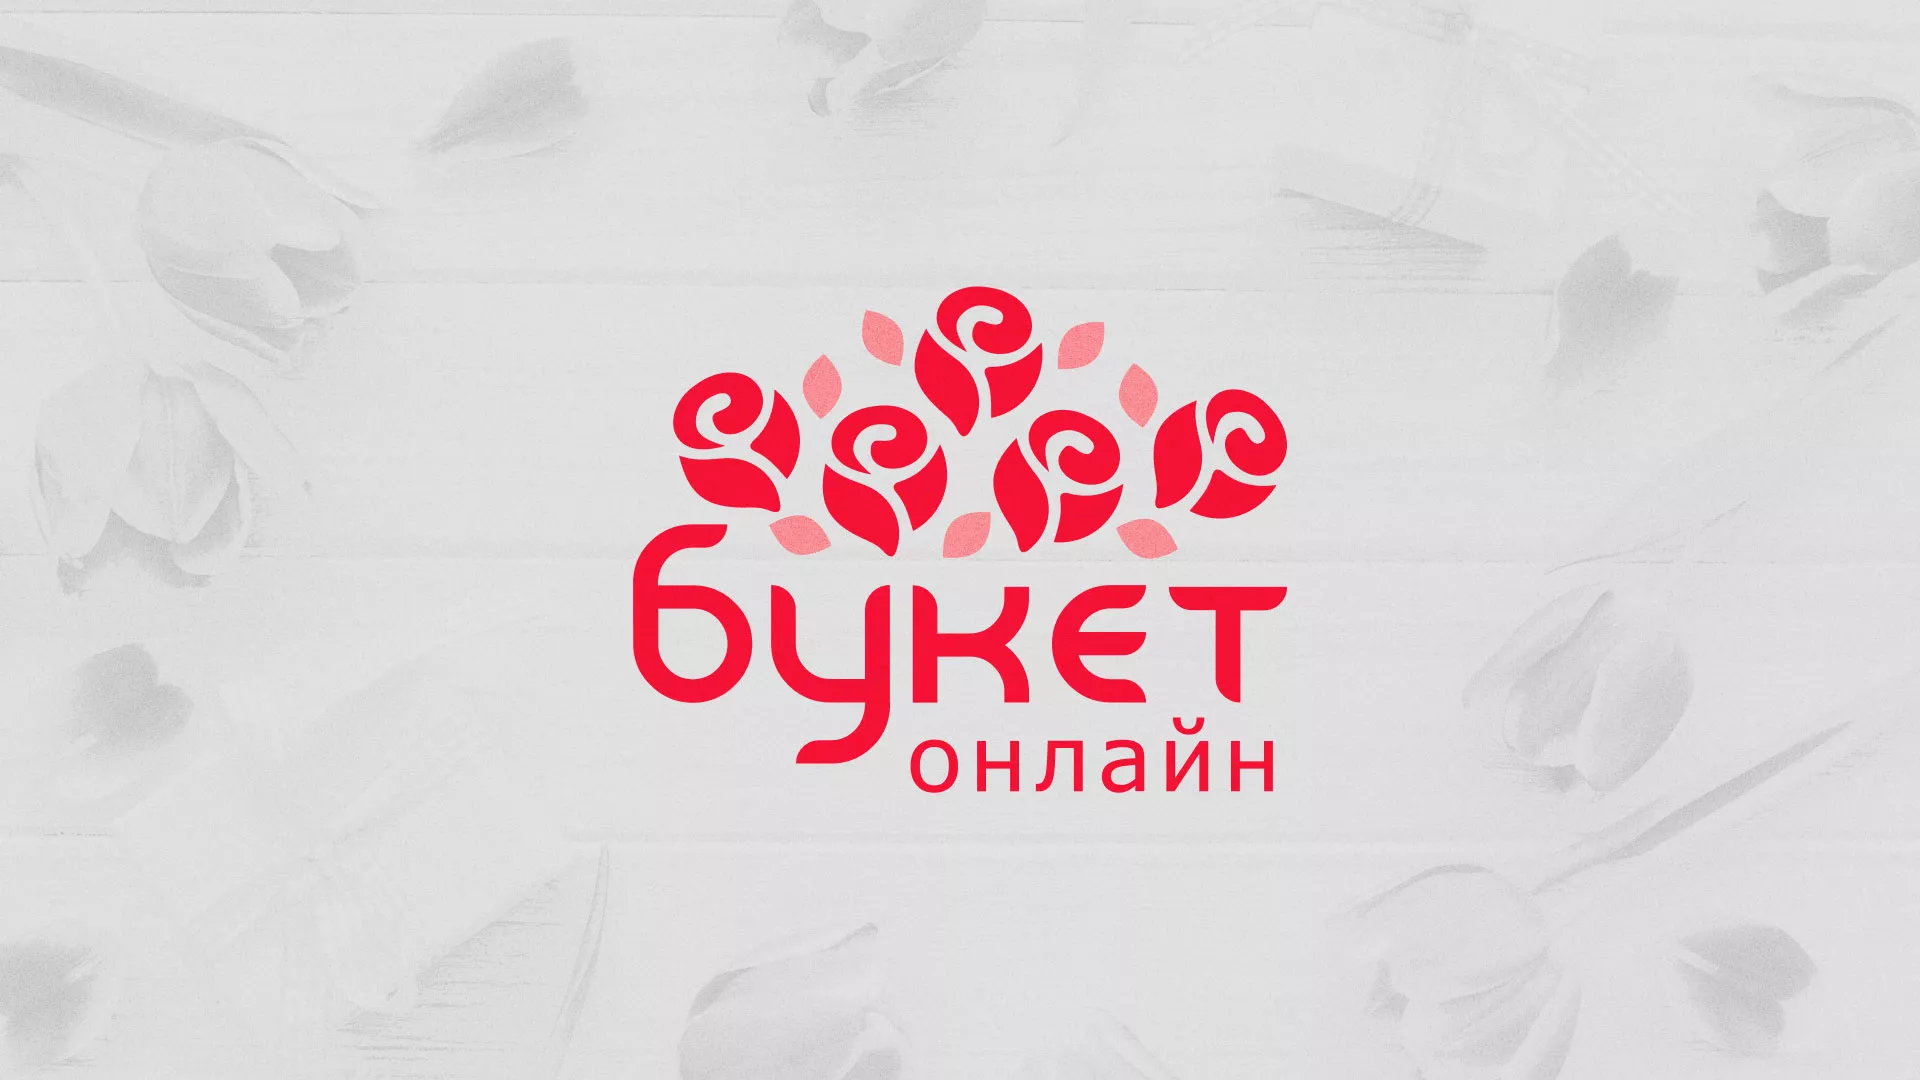 Создание интернет-магазина «Букет-онлайн» по цветам в Куйбышеве